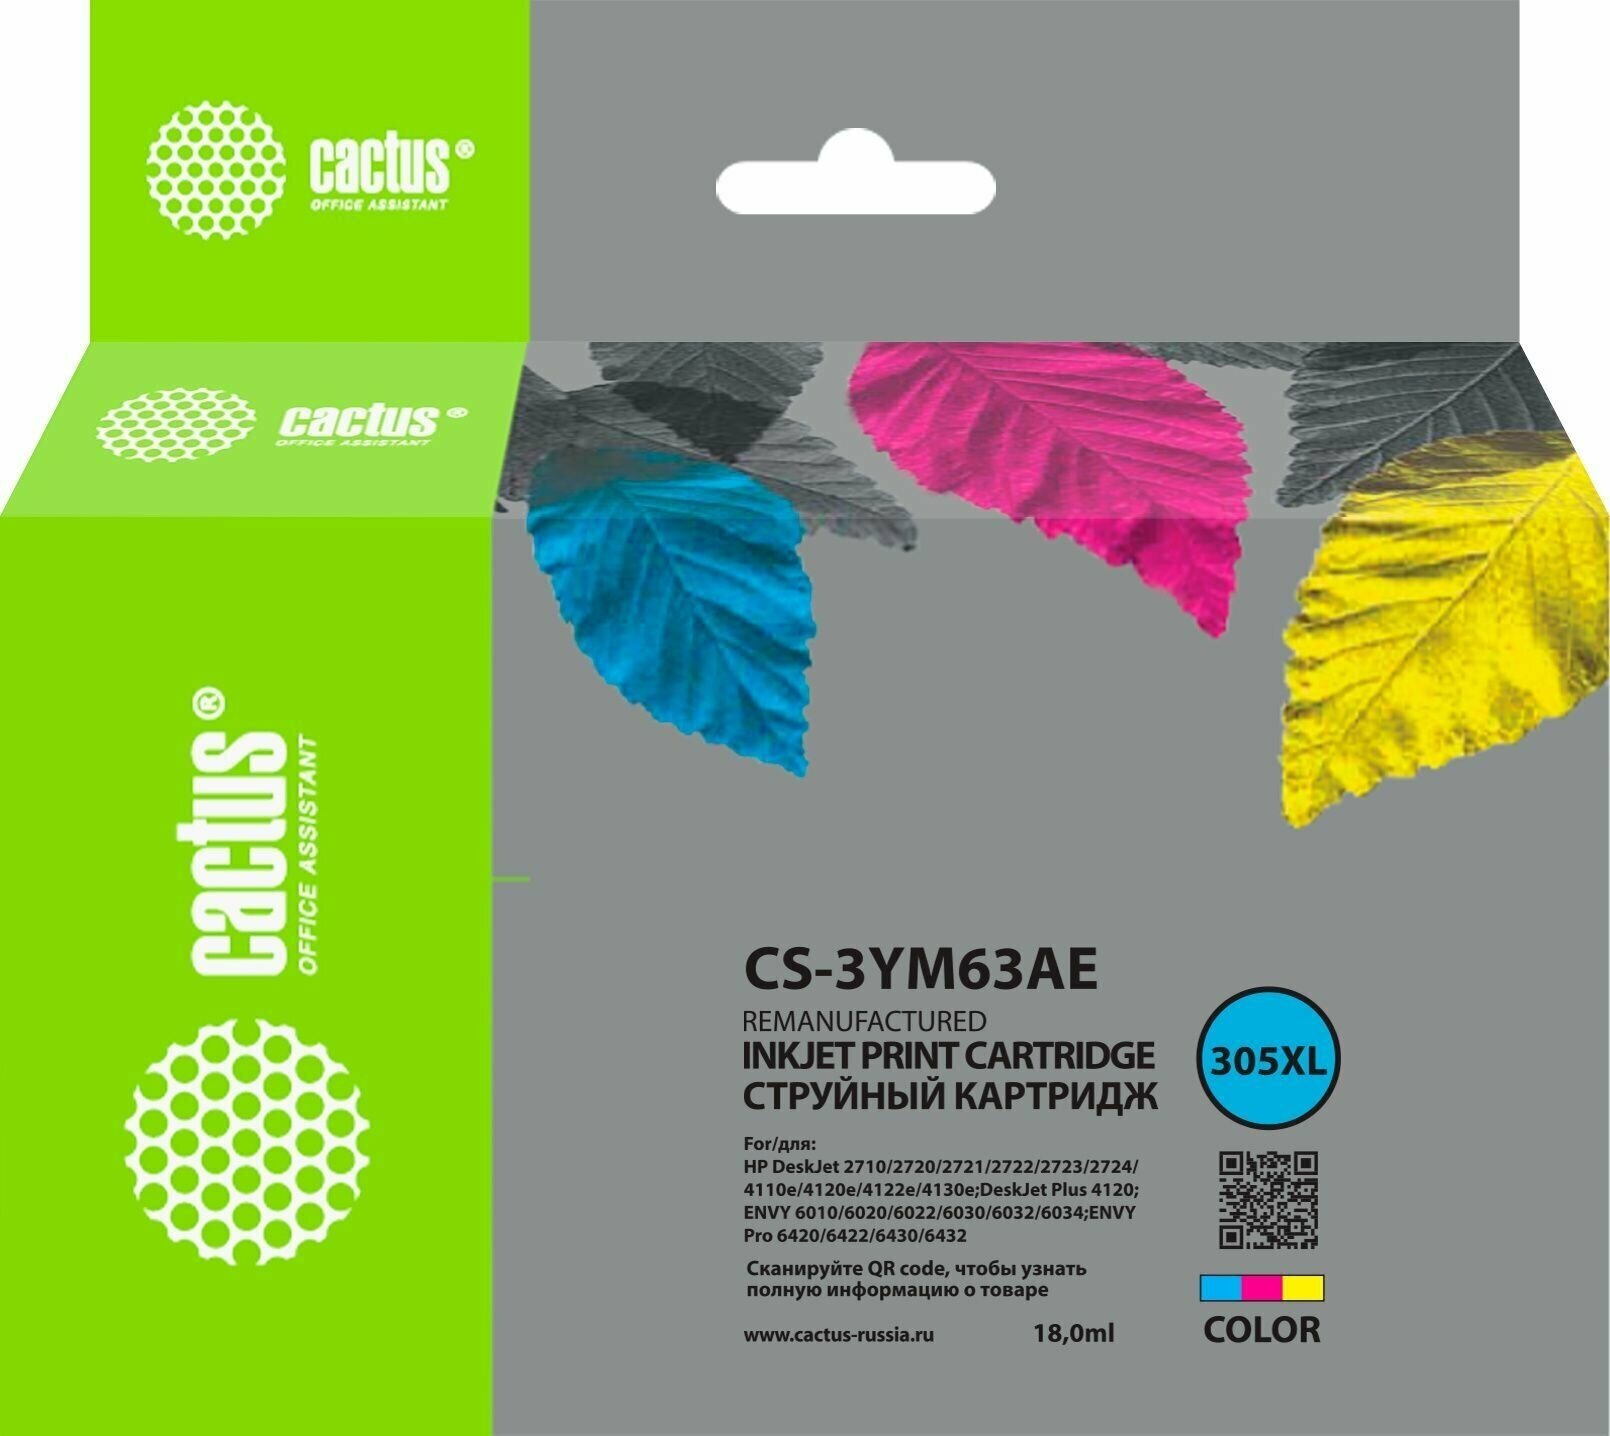 Картридж для принтера HP Deskjet 2320, 2710, 2720 струйный, Cactus CS-3YM63AE 305XL, цветной, 18 мл, совместимый